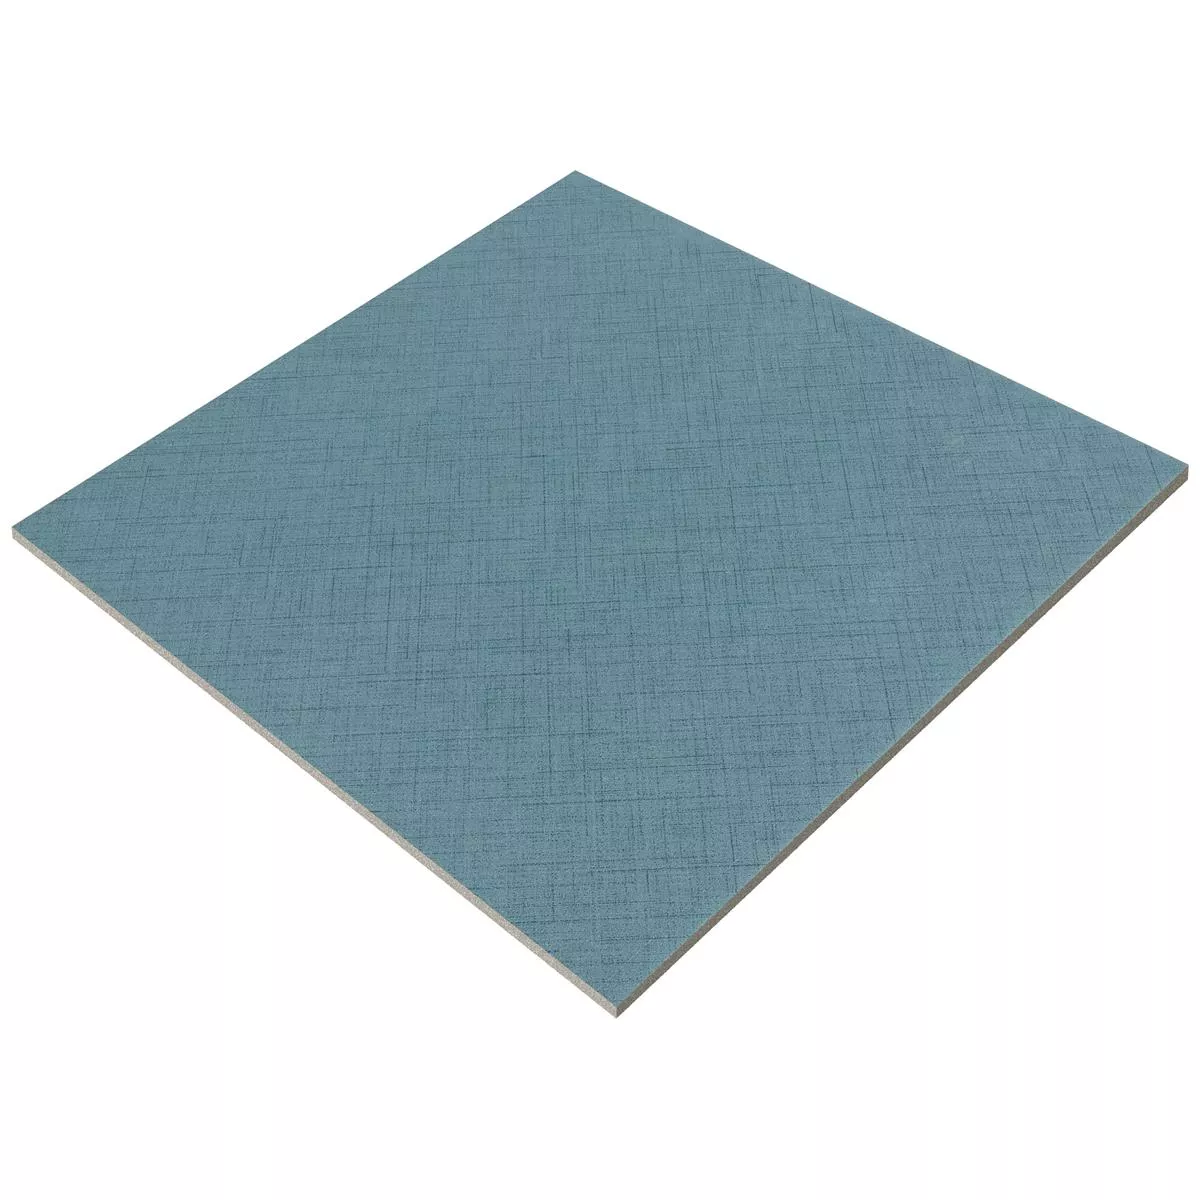 Sample Floor Tiles Flowerfield 18,5x18,5cm Blue Basic Tile